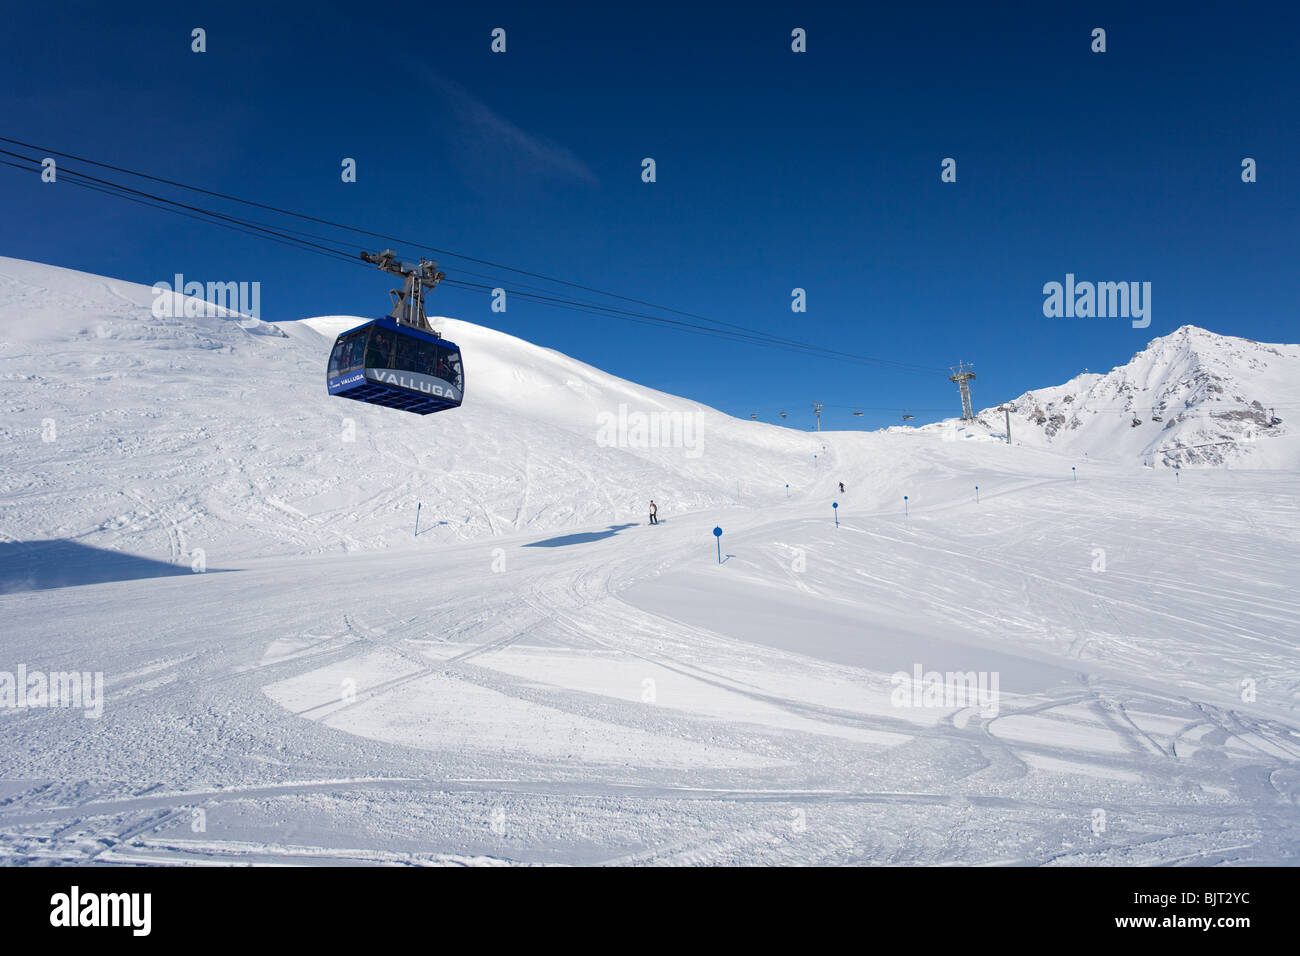 Los esquiadores bajando pistas de esquí Valluga teleférico teleférico Galzig montaña nieve del invierno San San San Anton am Arlberg Austria Foto de stock